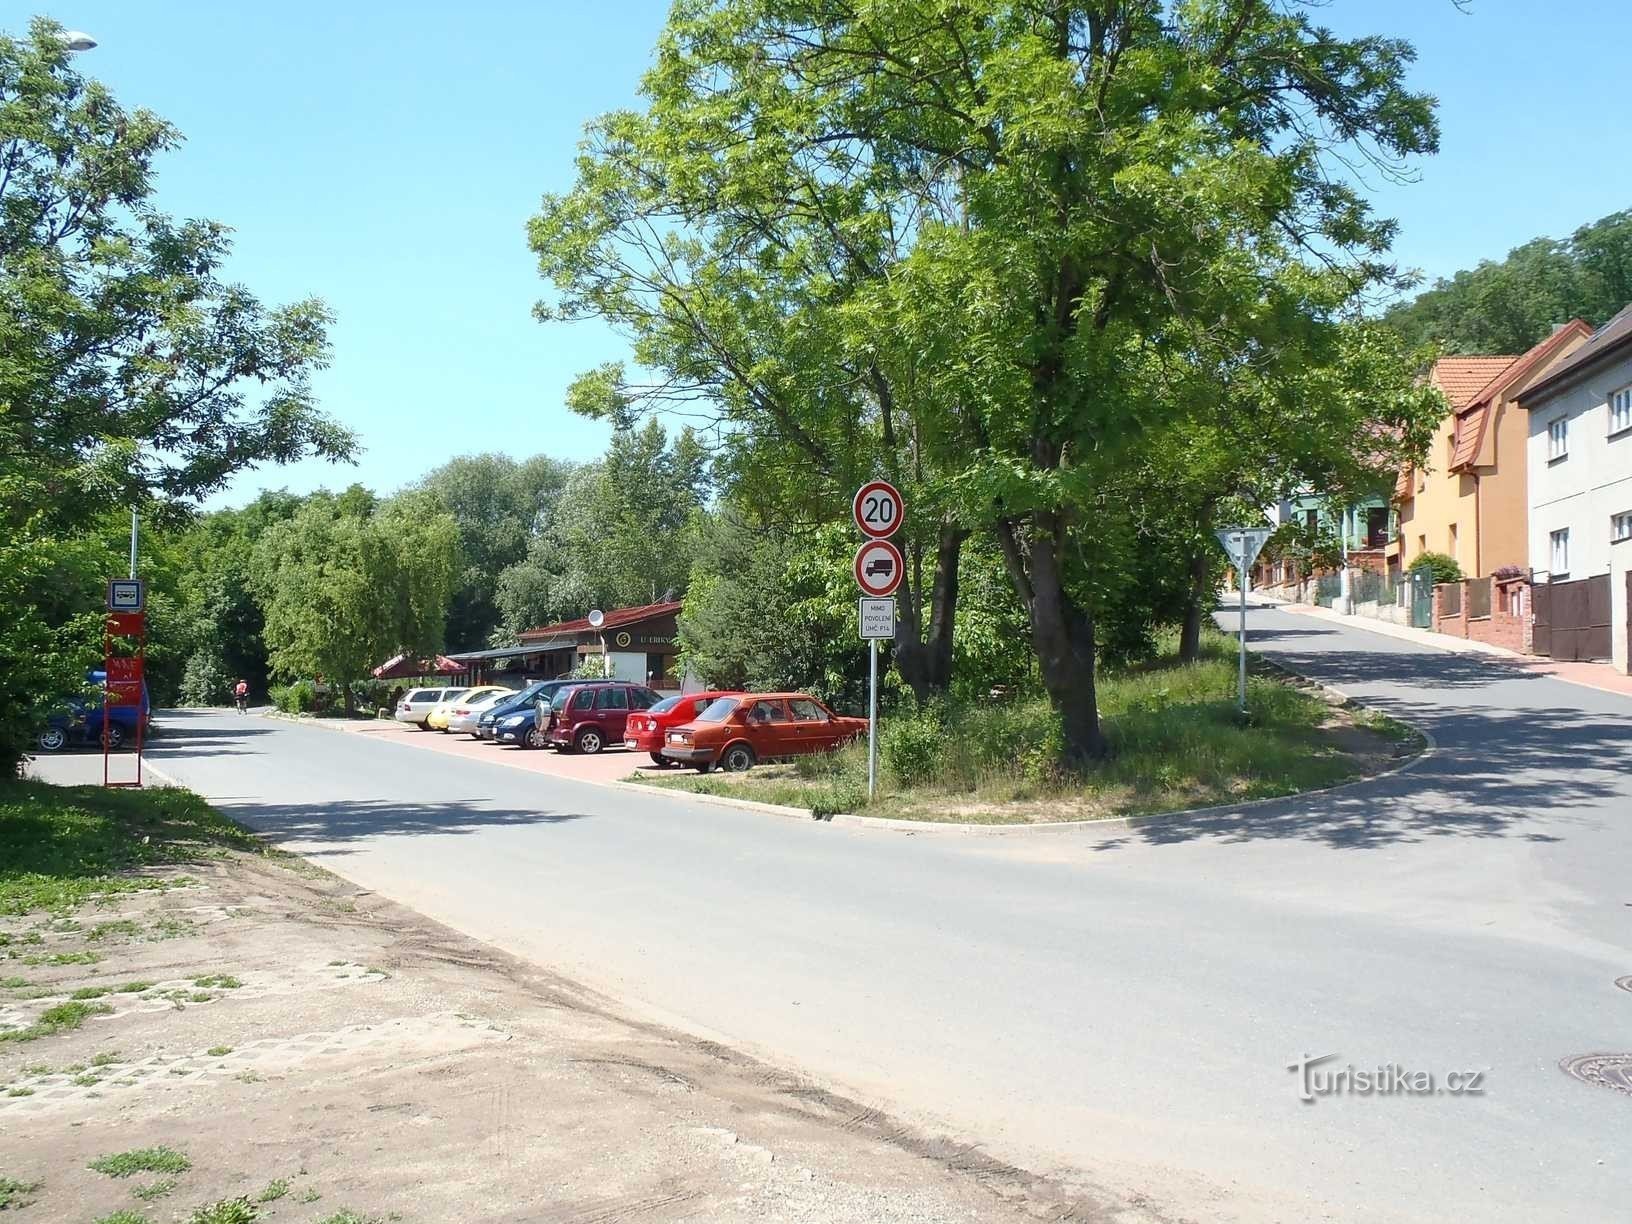 Străzile Tálinská și Lánská din Kyjy - 15.6.2012